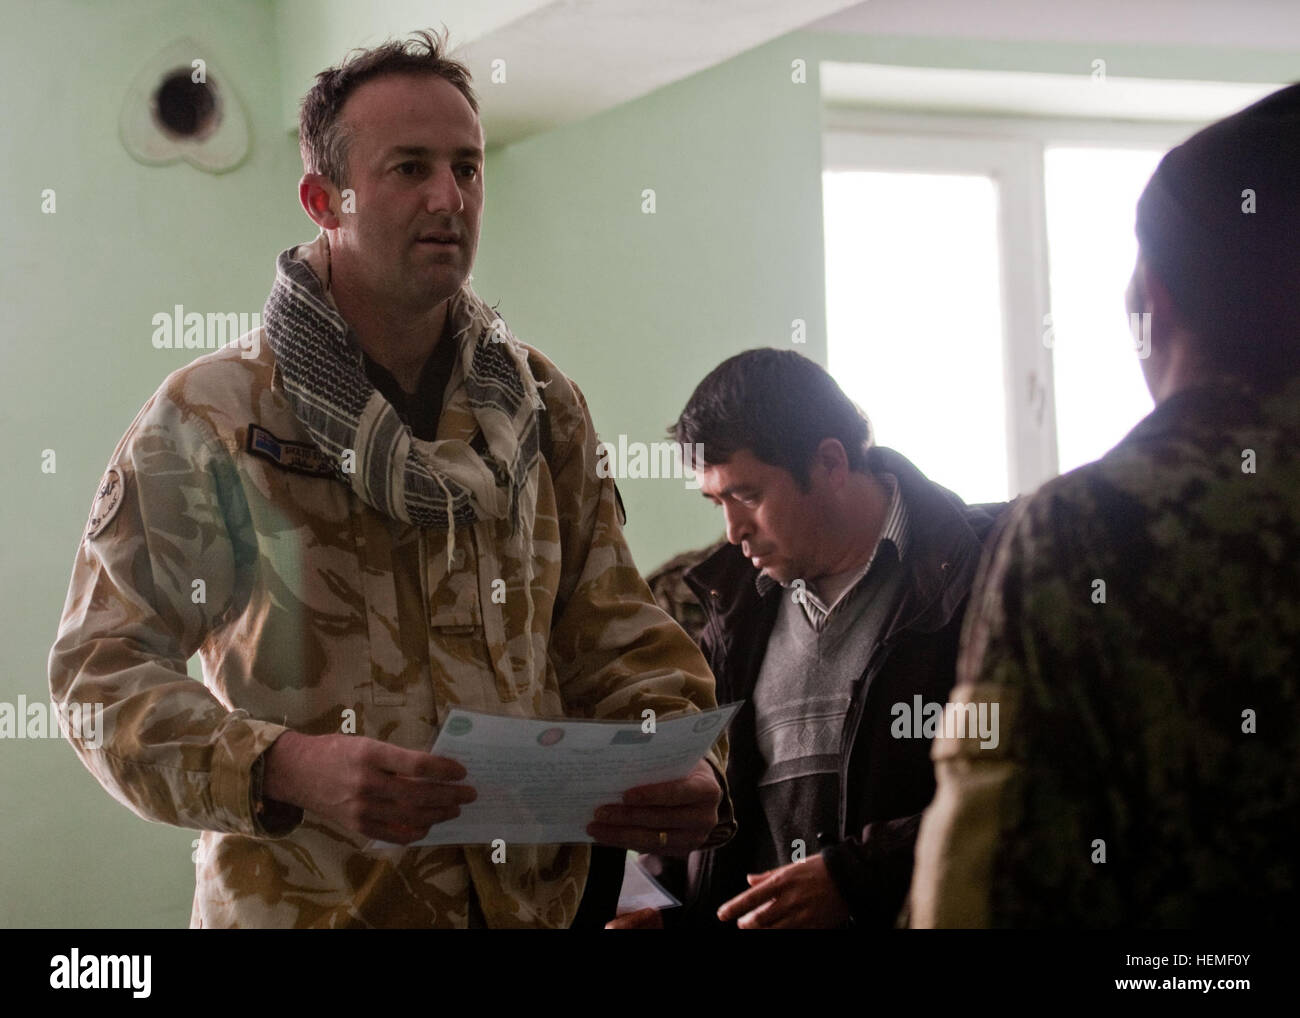 La province de Bamyan, Afghanistan - Le Lieutenant-colonel de l'Armée de Nouvelle-Zélande Sholto Stephens, le commandant de la composante militaire de l'Équipe de reconstruction provinciale de NZ, mains nouvellement diplômée d'un soldat de l'Armée nationale afghane, son diplôme, dans la province de Bamyan, Afghanistan, le 26 février 2013. La NZ PRT a contribué à rassembler la province de Bamyan qu'il est aujourd'hui en développant leurs infrastructures et la formation de leurs forces de sécurité en préparation pour le retrait des forces de la coalition. (U.S. Photo de l'armée par le Sgt. Christopher Bonebrake, Mobile 115e Détachement des affaires publiques), une province de Bamyan dans l Banque D'Images